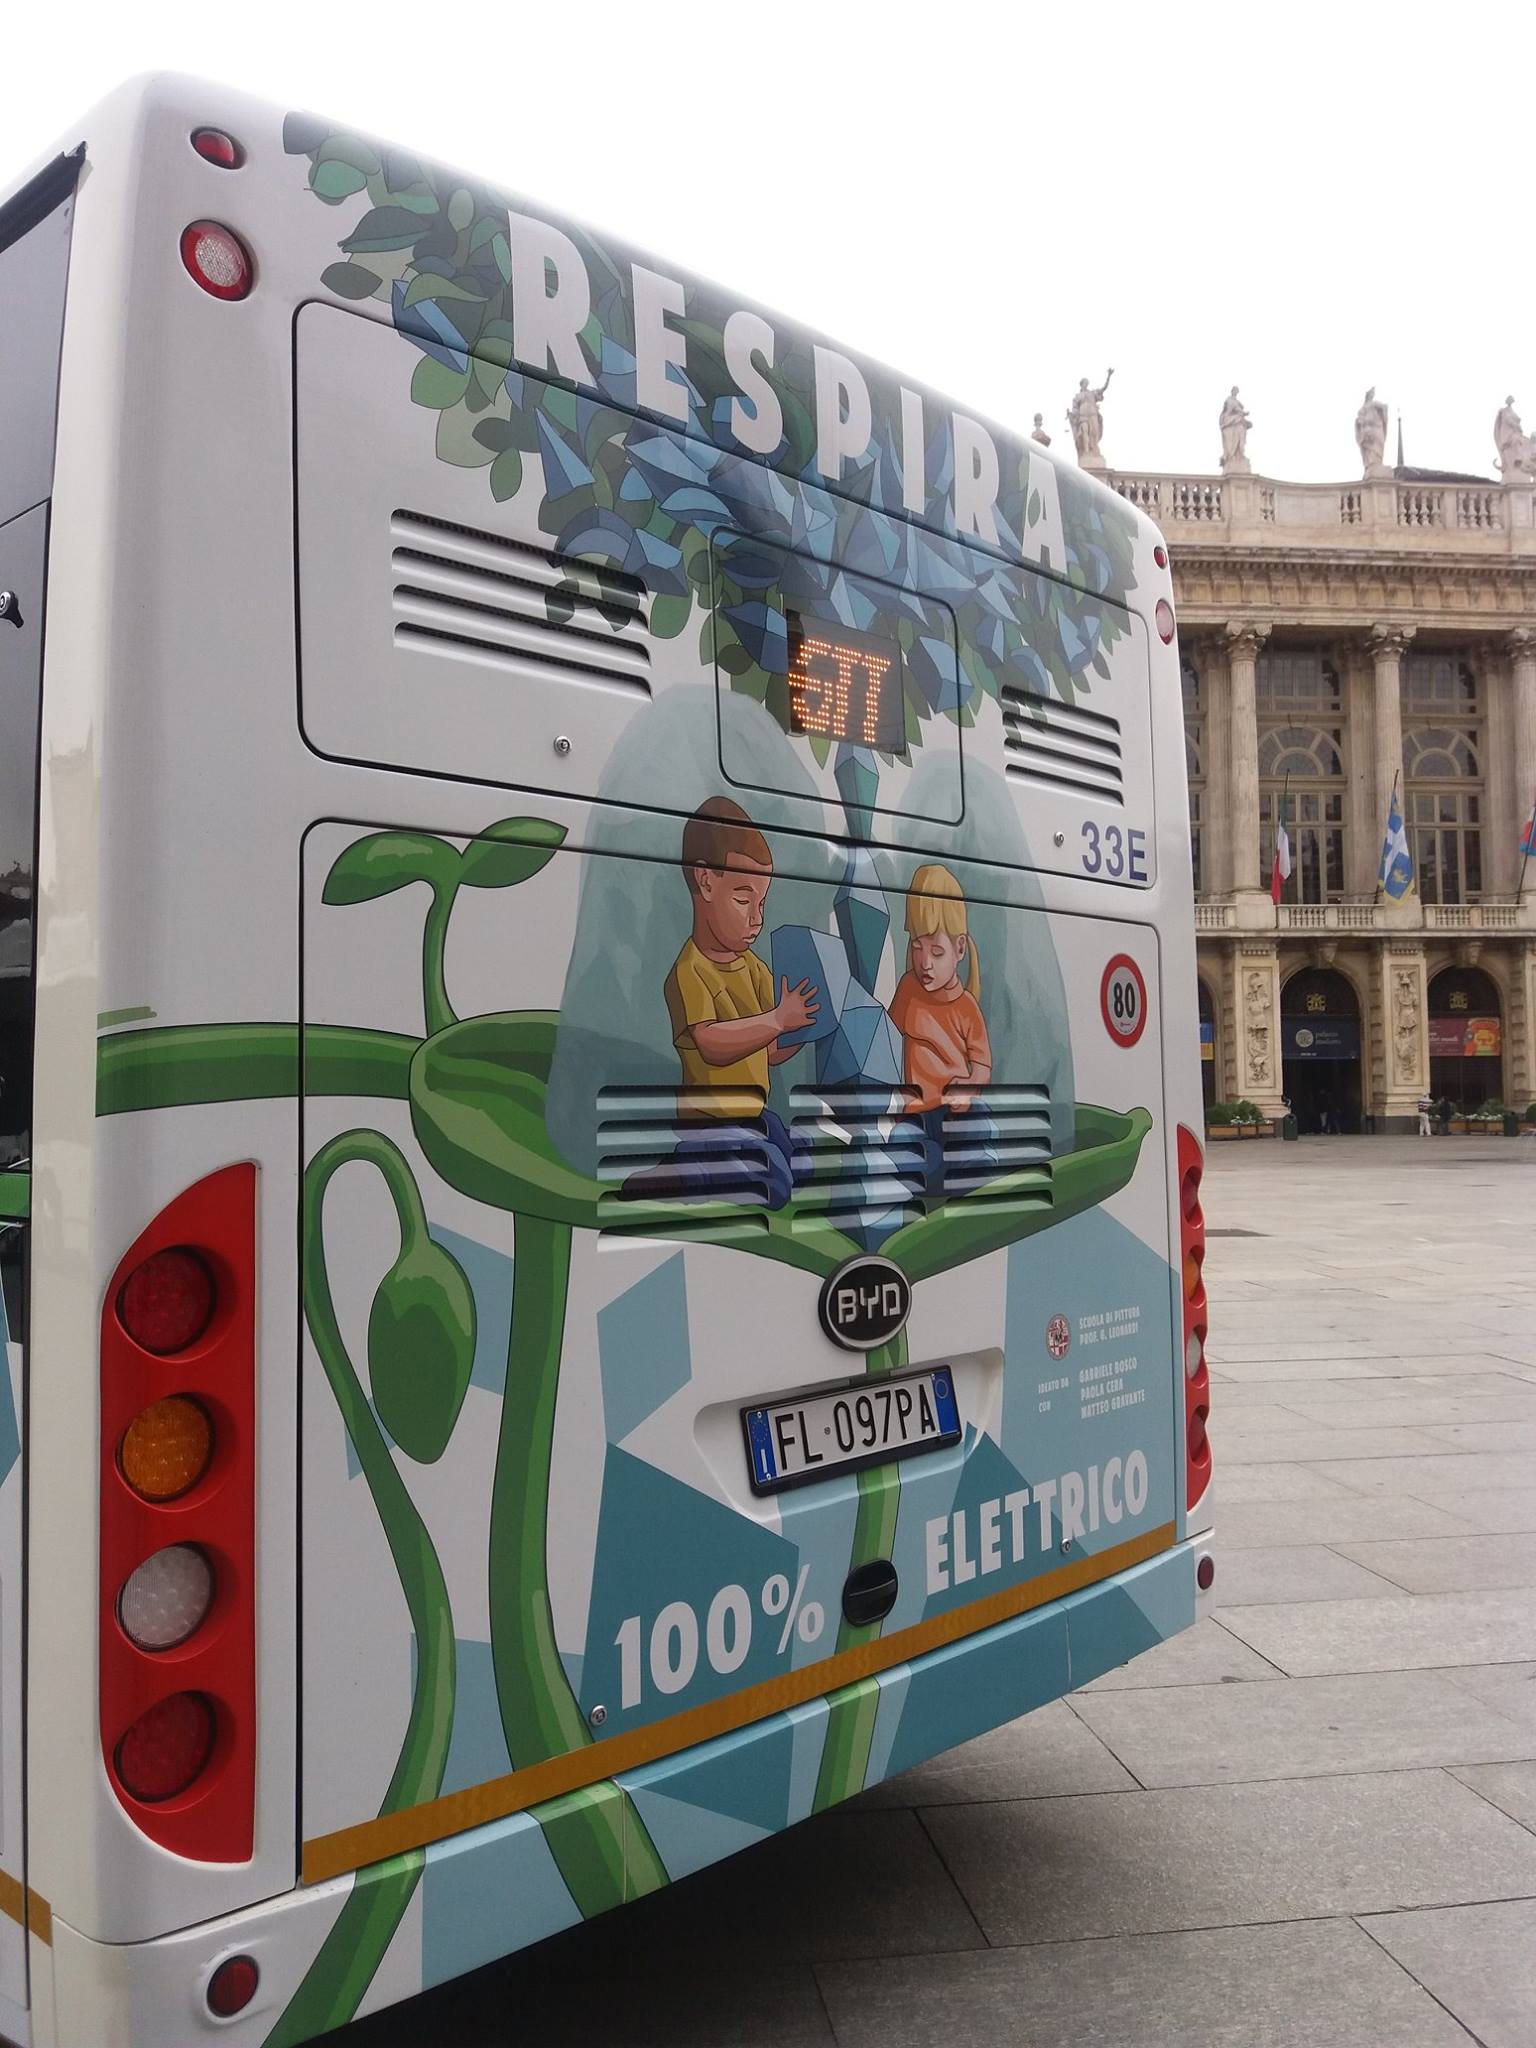 Torino: l’azienda Gtt presenta nuovi bus elettrici nella visione di una rete ecologica